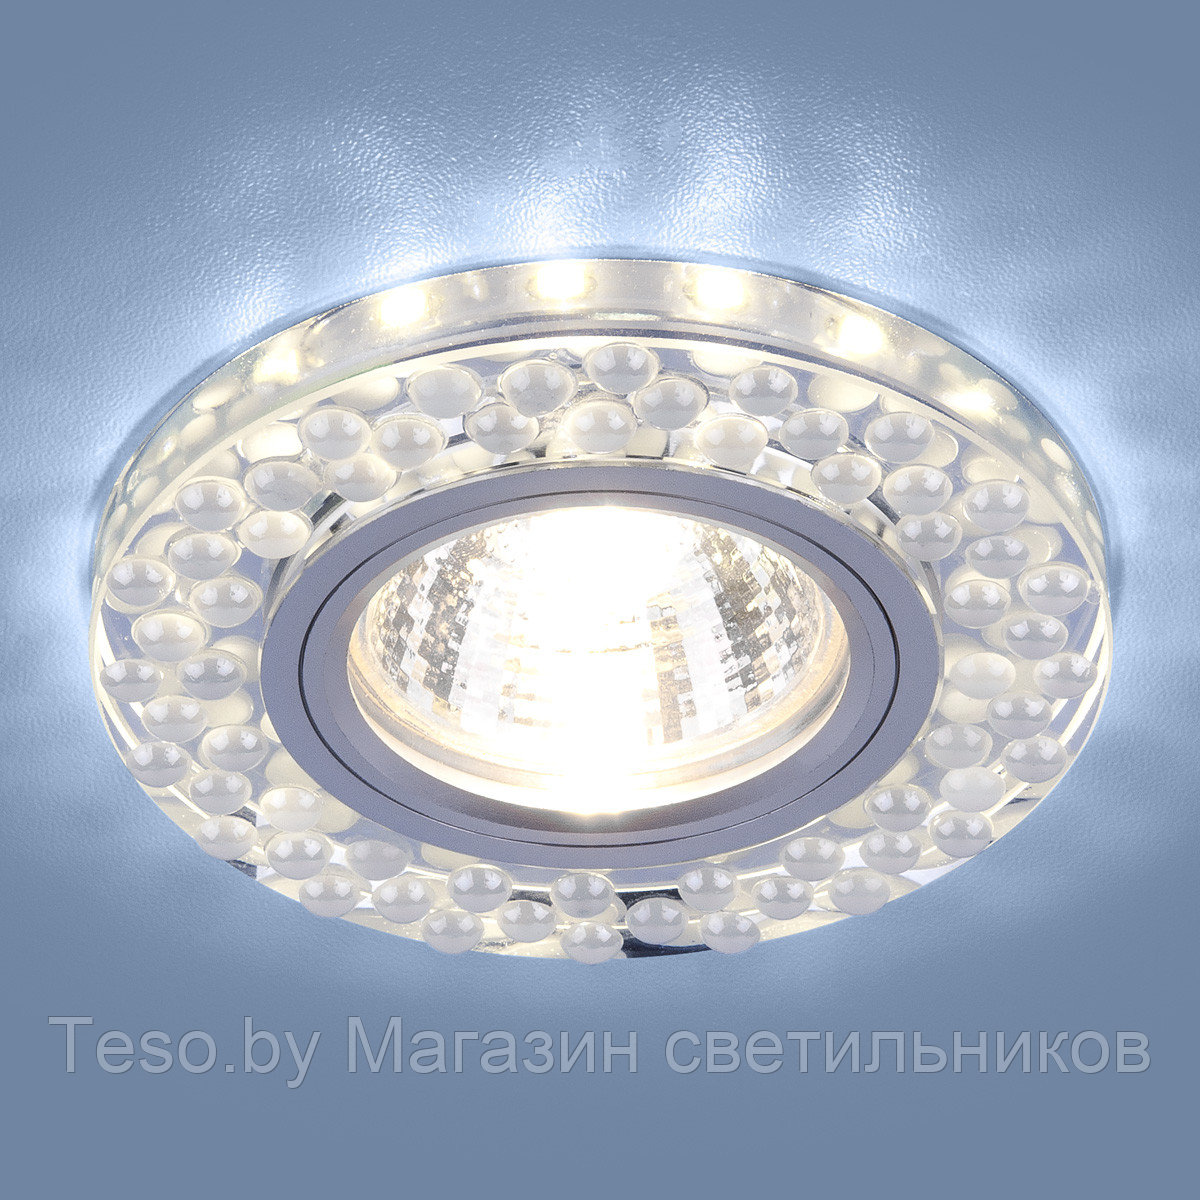 Встраиваемый точечный светильник с LED подсветкой 2194 MR16 SL/WH зеркальный/белый (немецкое качество) 